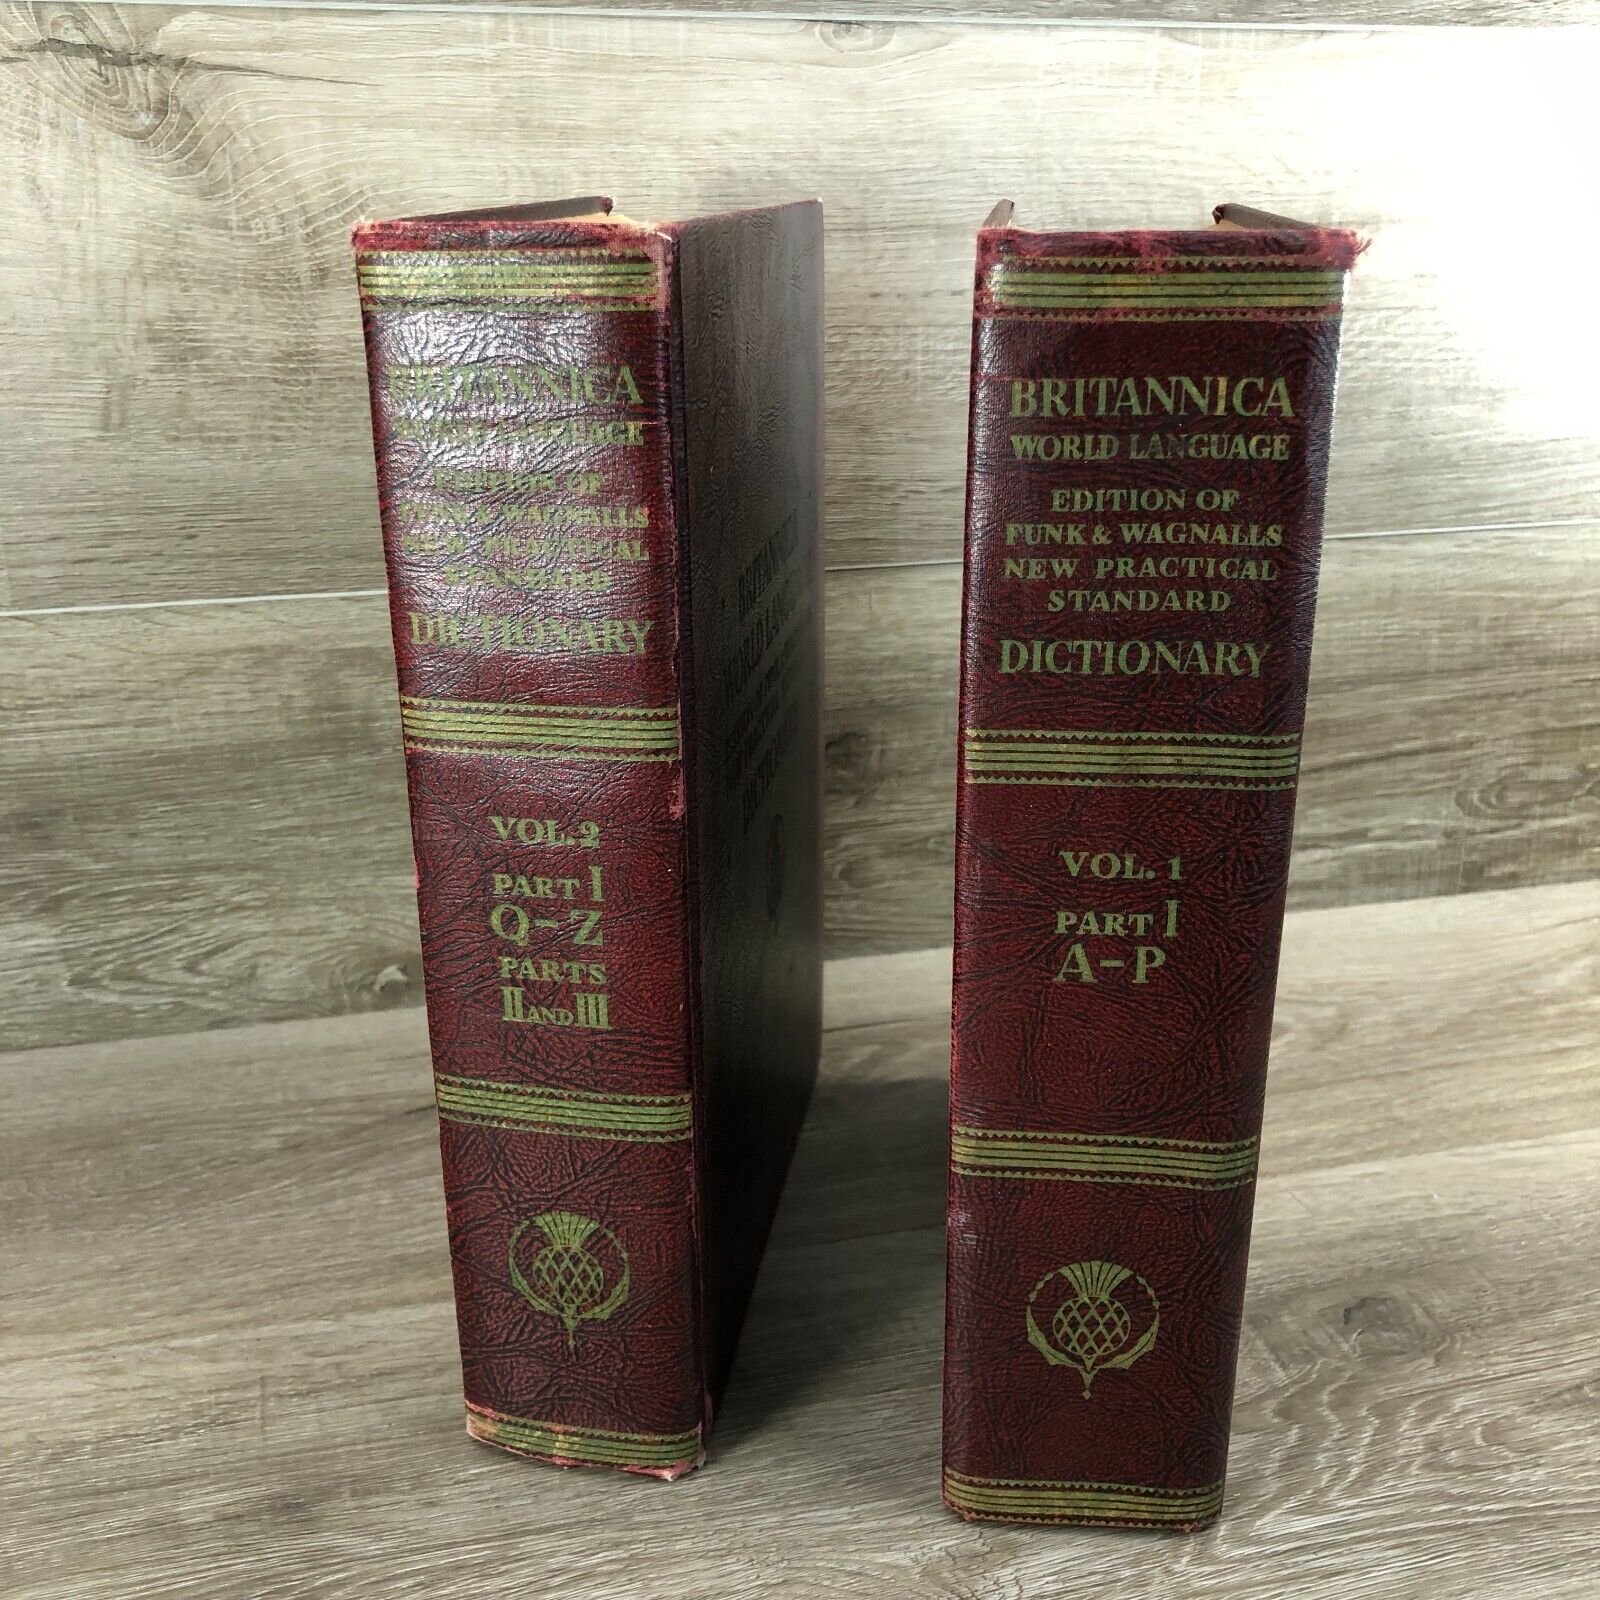 Vintage 1956 Britannica World Language Dictionary 2 Volume Set A-P, Q-Z Funk &..